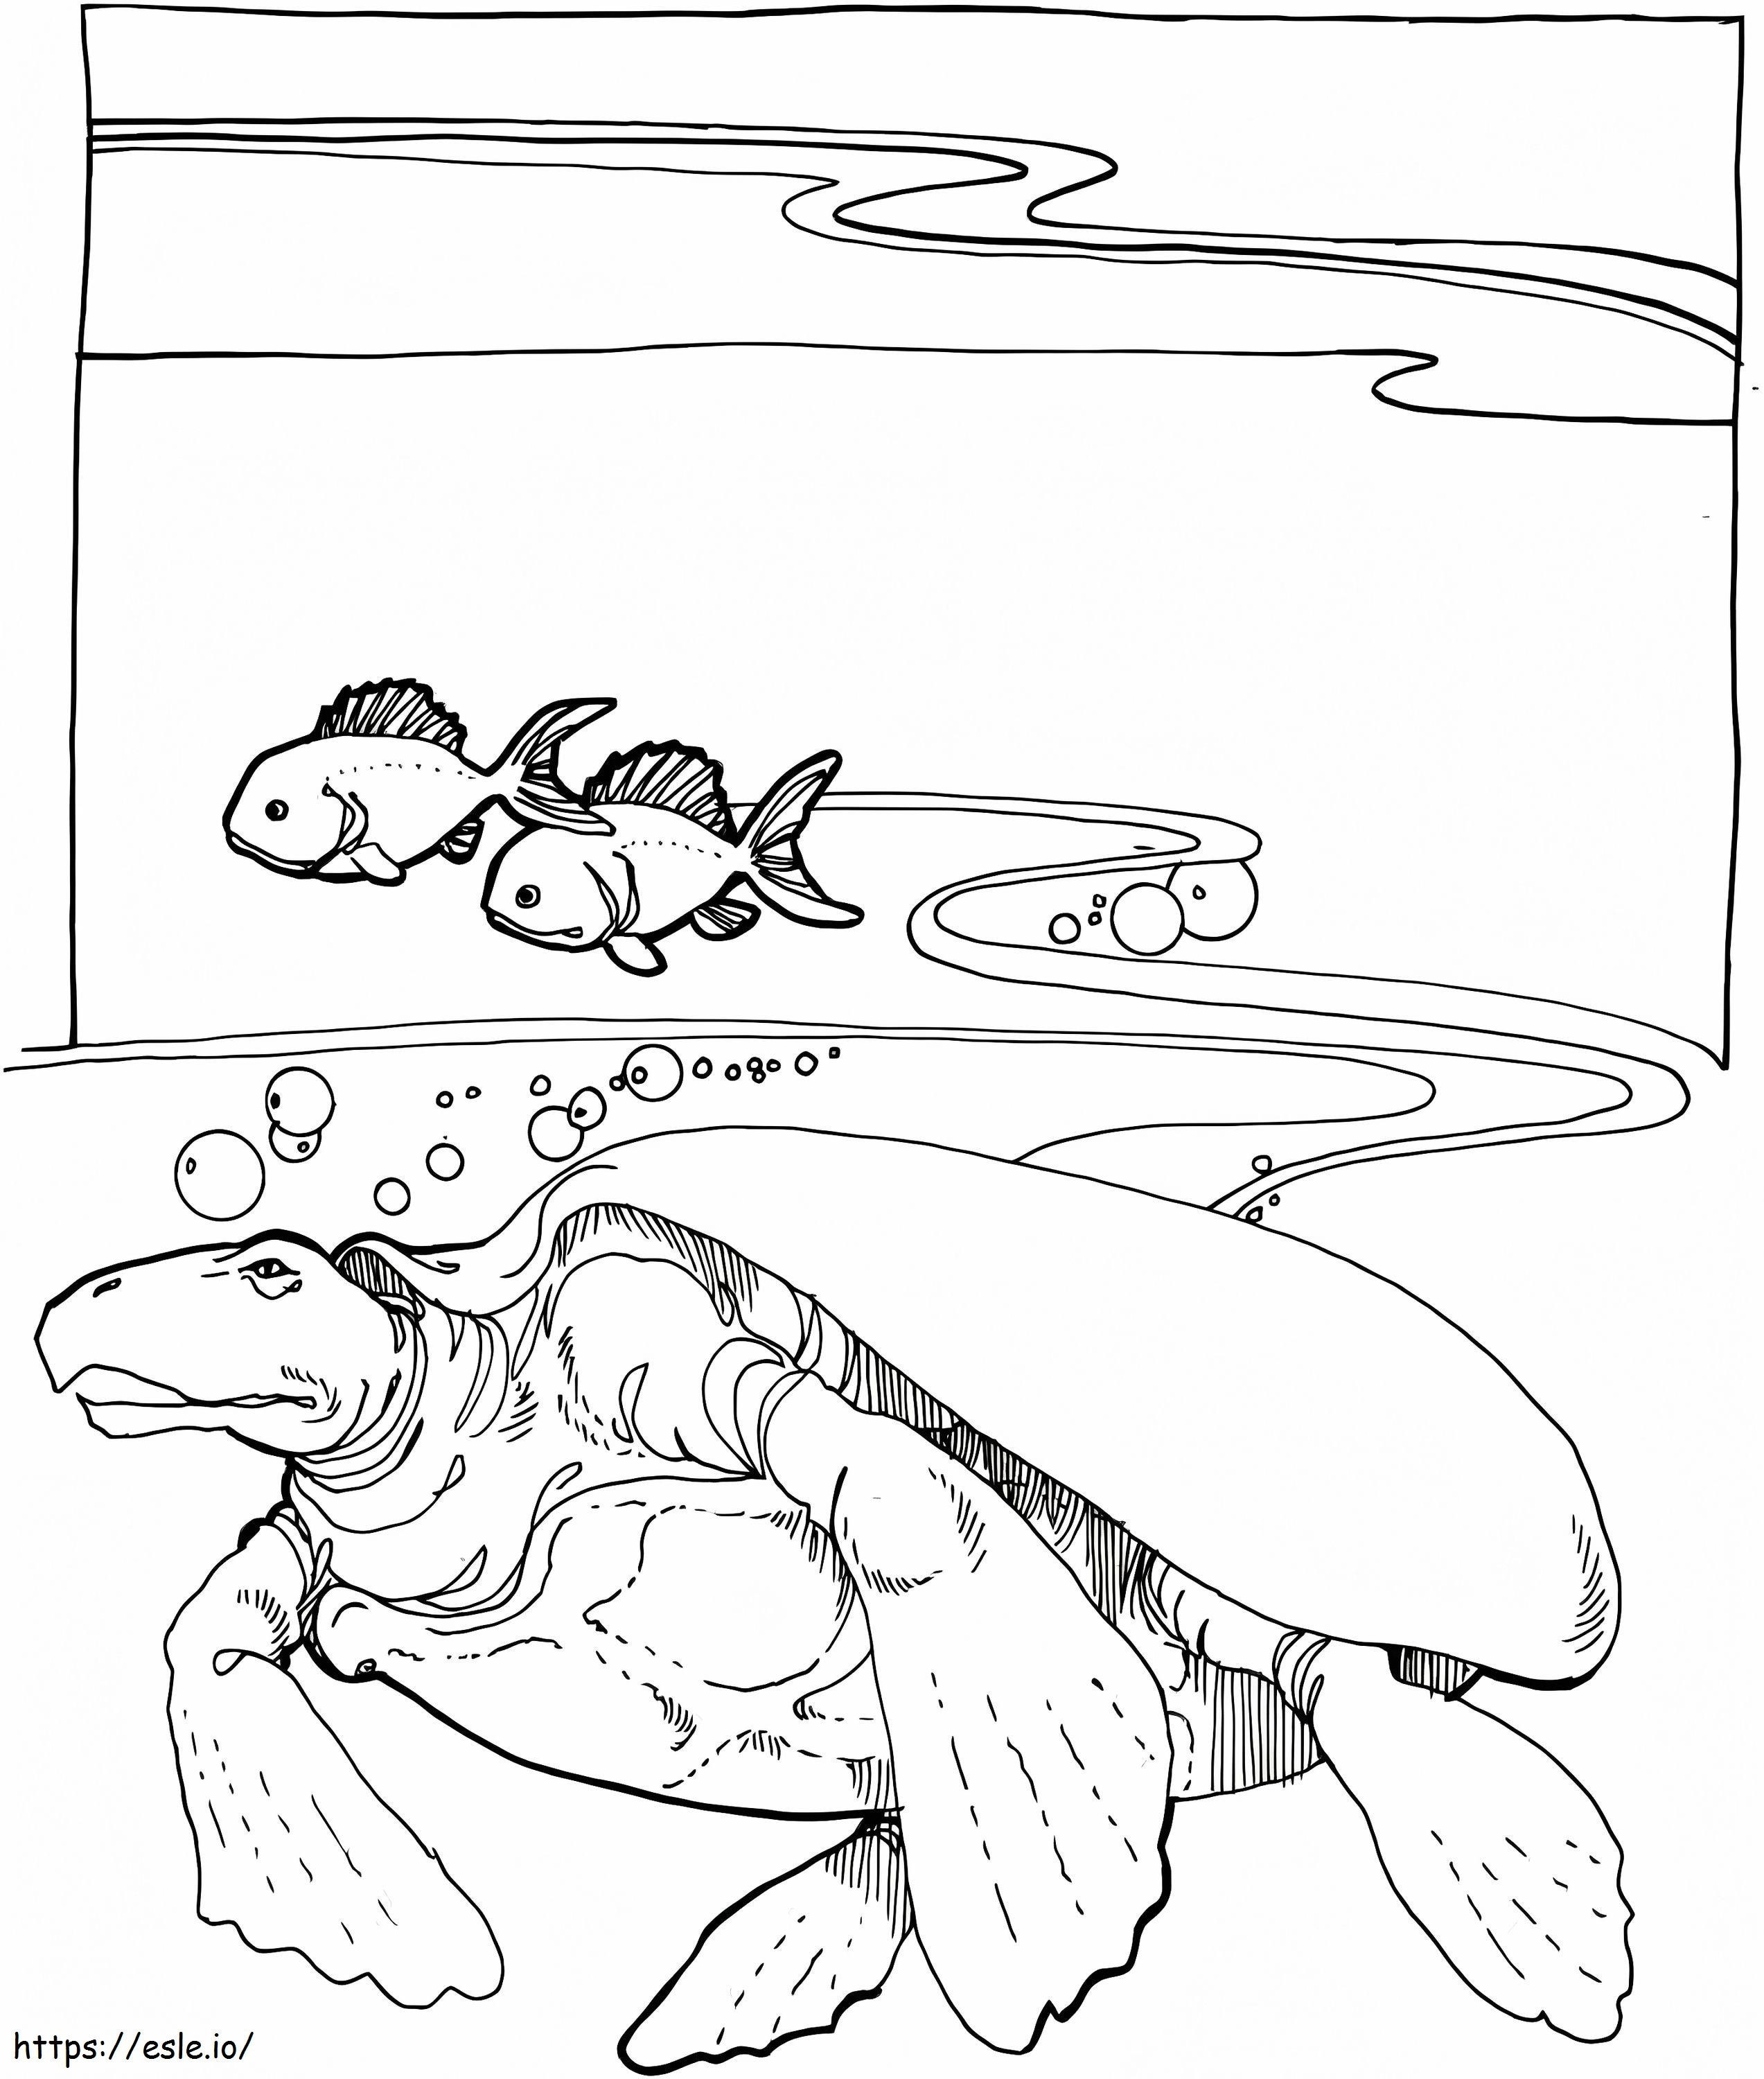 Ausgestorbene Meeresschildkröte Archelon ausmalbilder